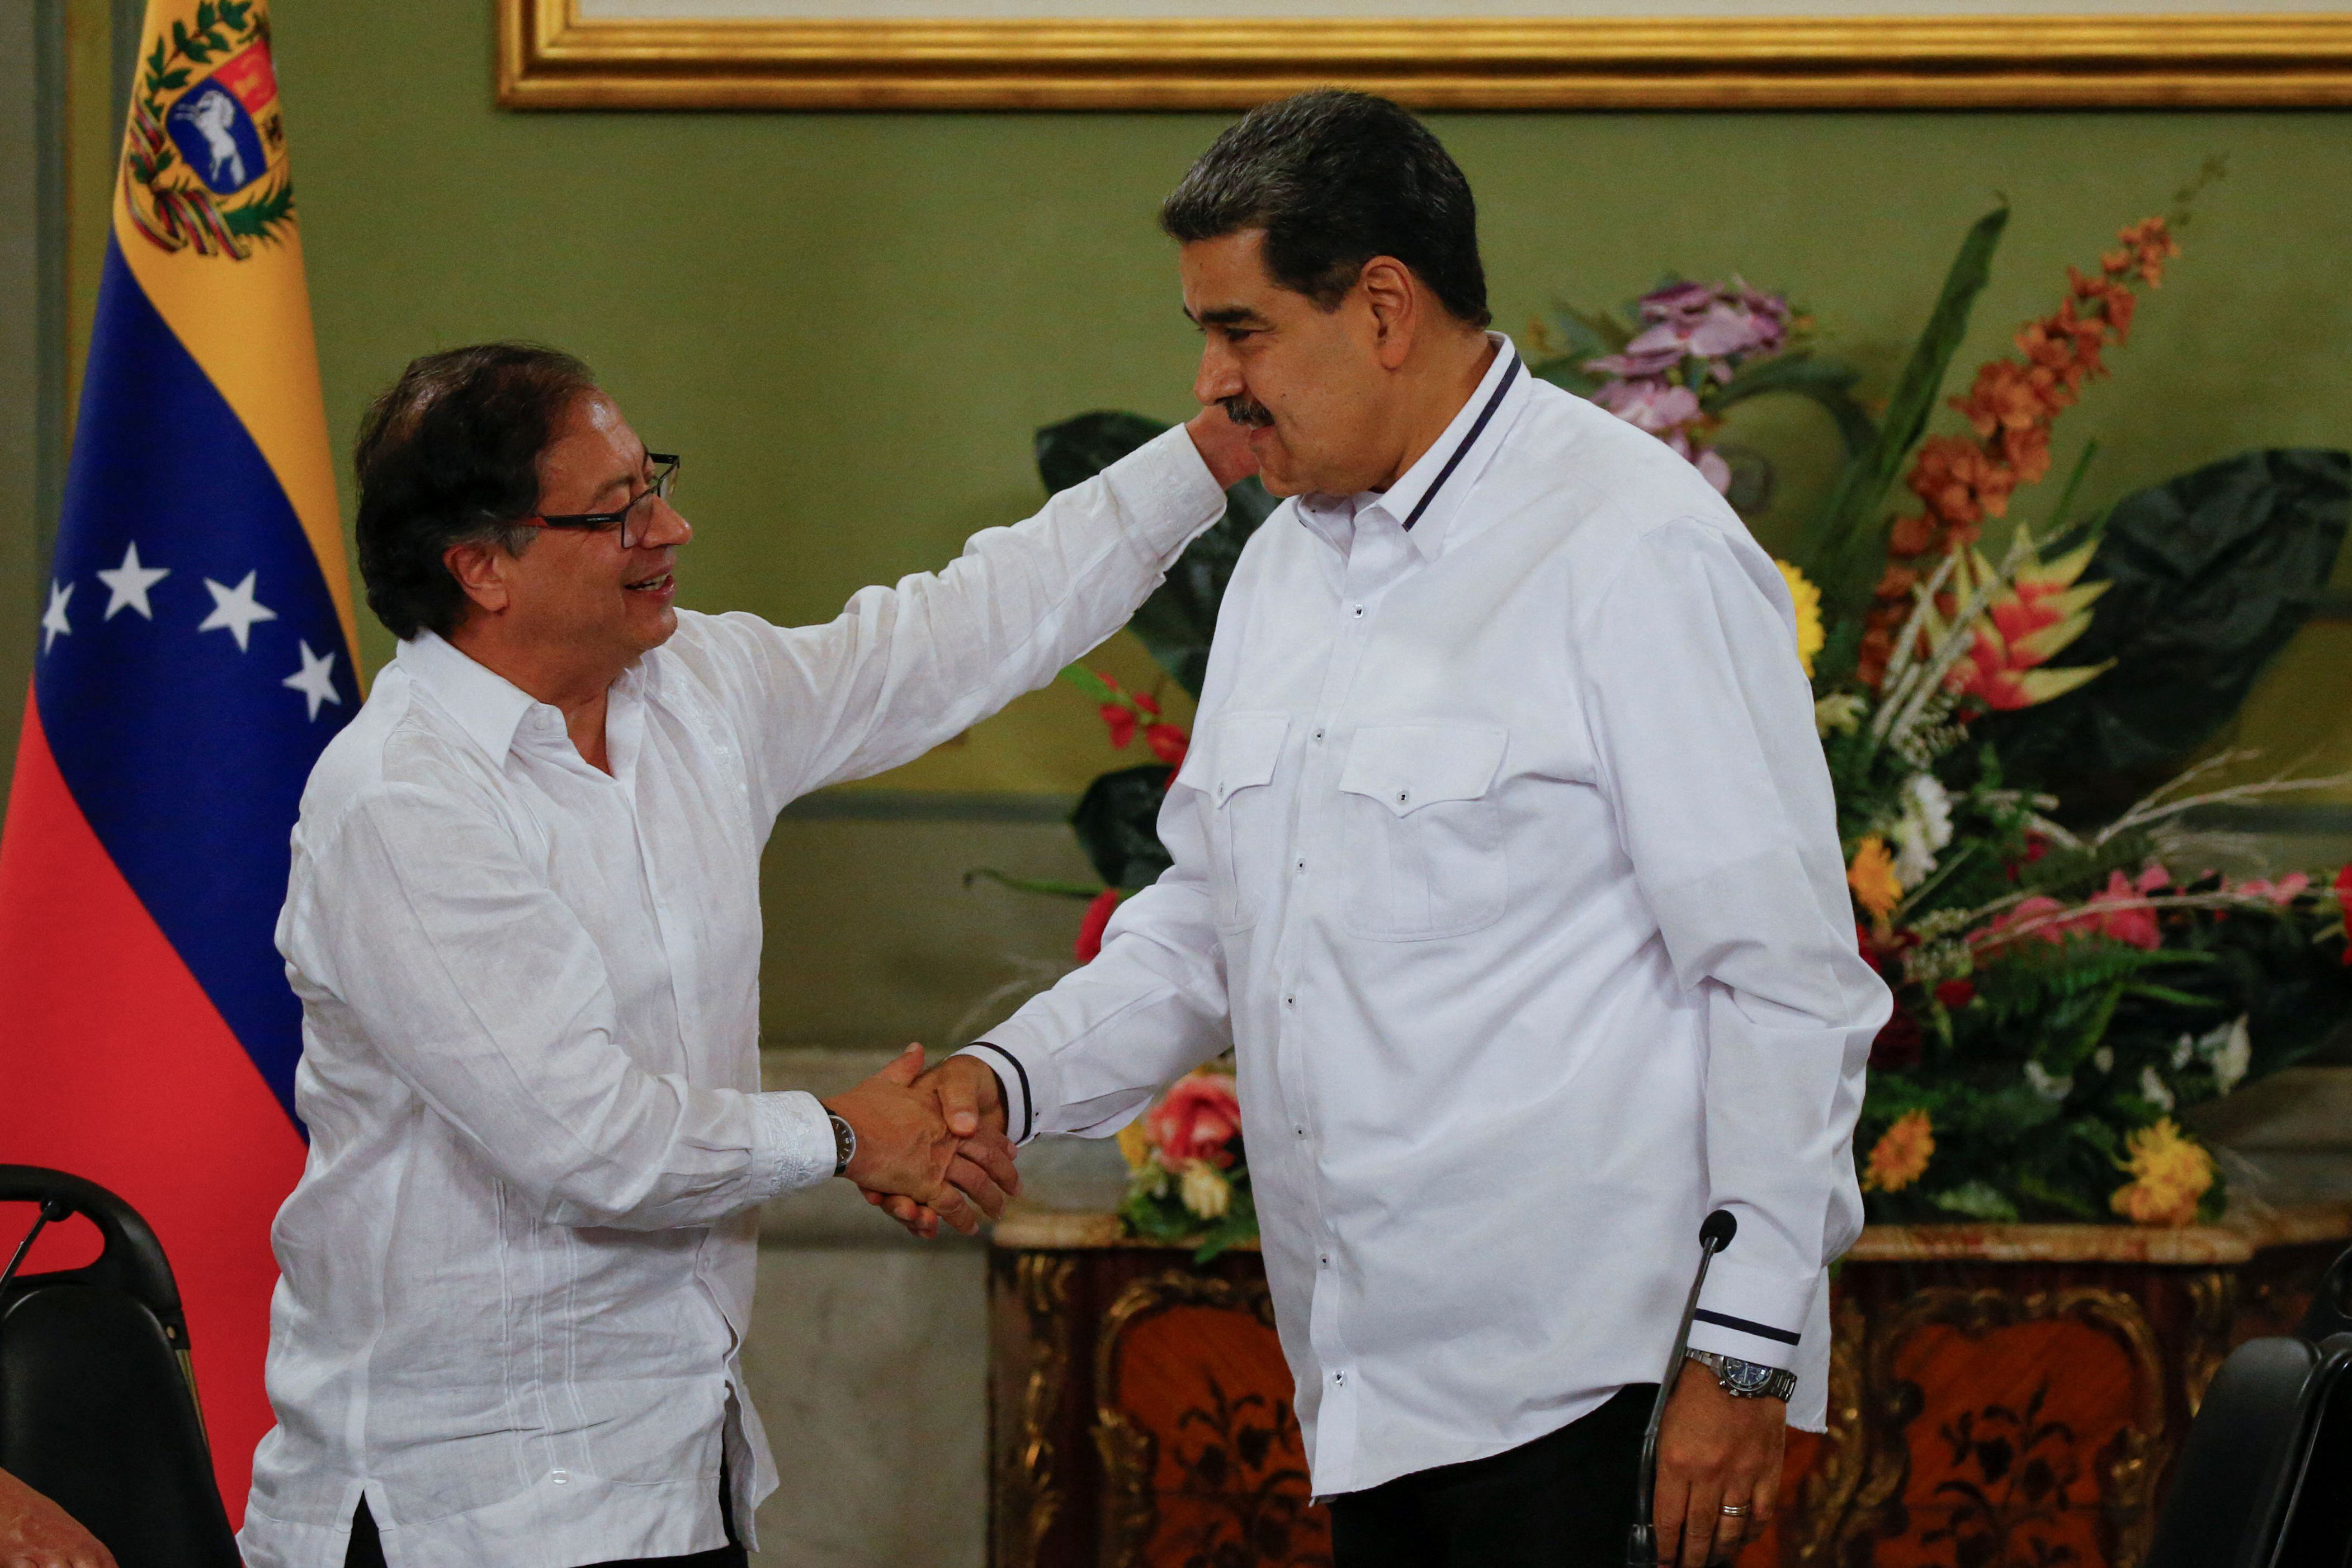 petro reabre el debate sobre una asamblea constituyente y oposición colombiana lo acusa de intento de “golpe de estado”